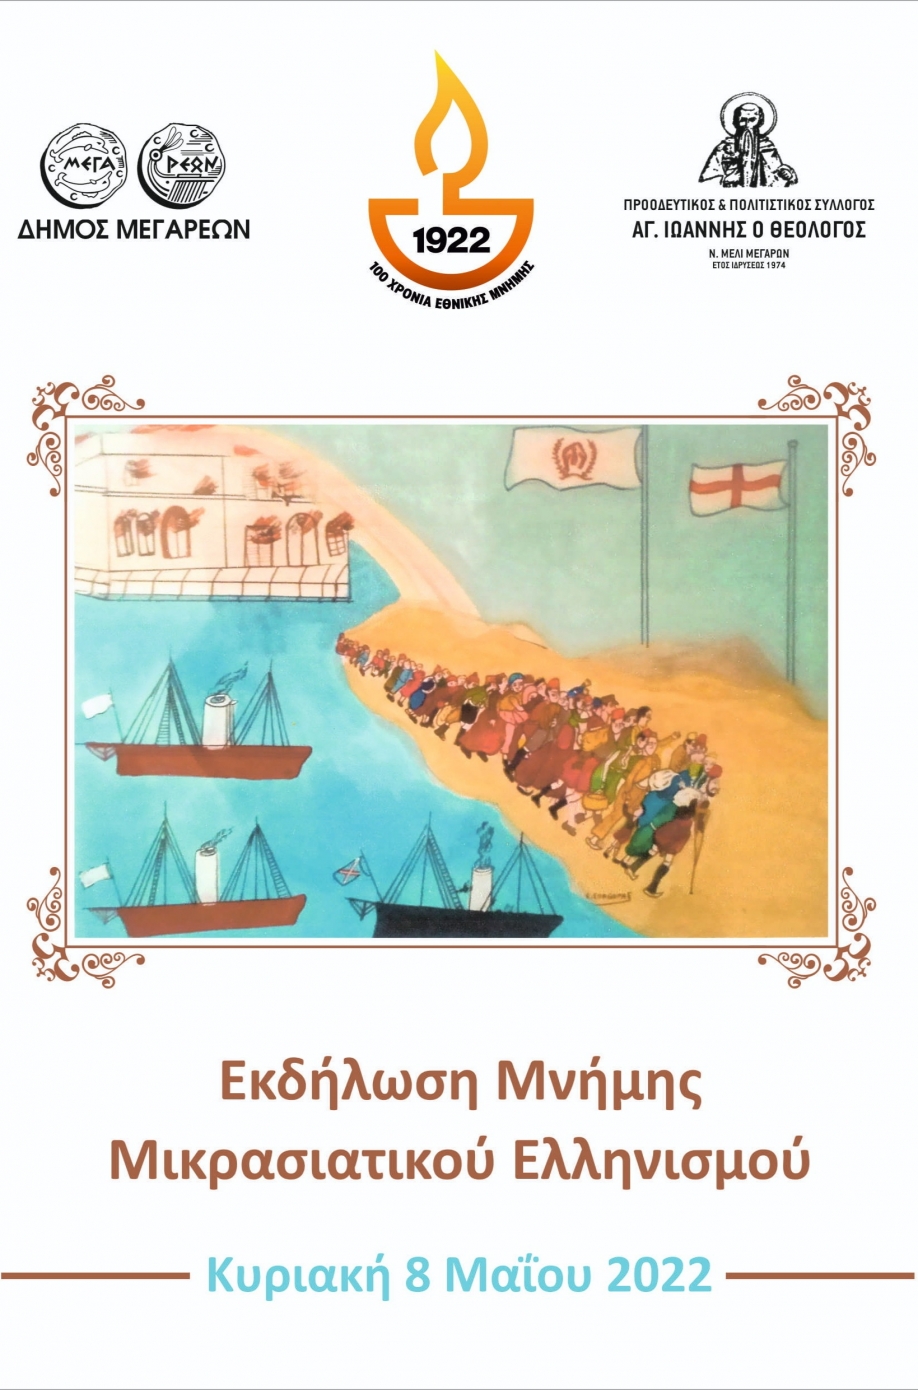 Εκδήλωση μνήμης μικρασιατικού ελληνισμού στο Νέο Μελί Μεγάρων